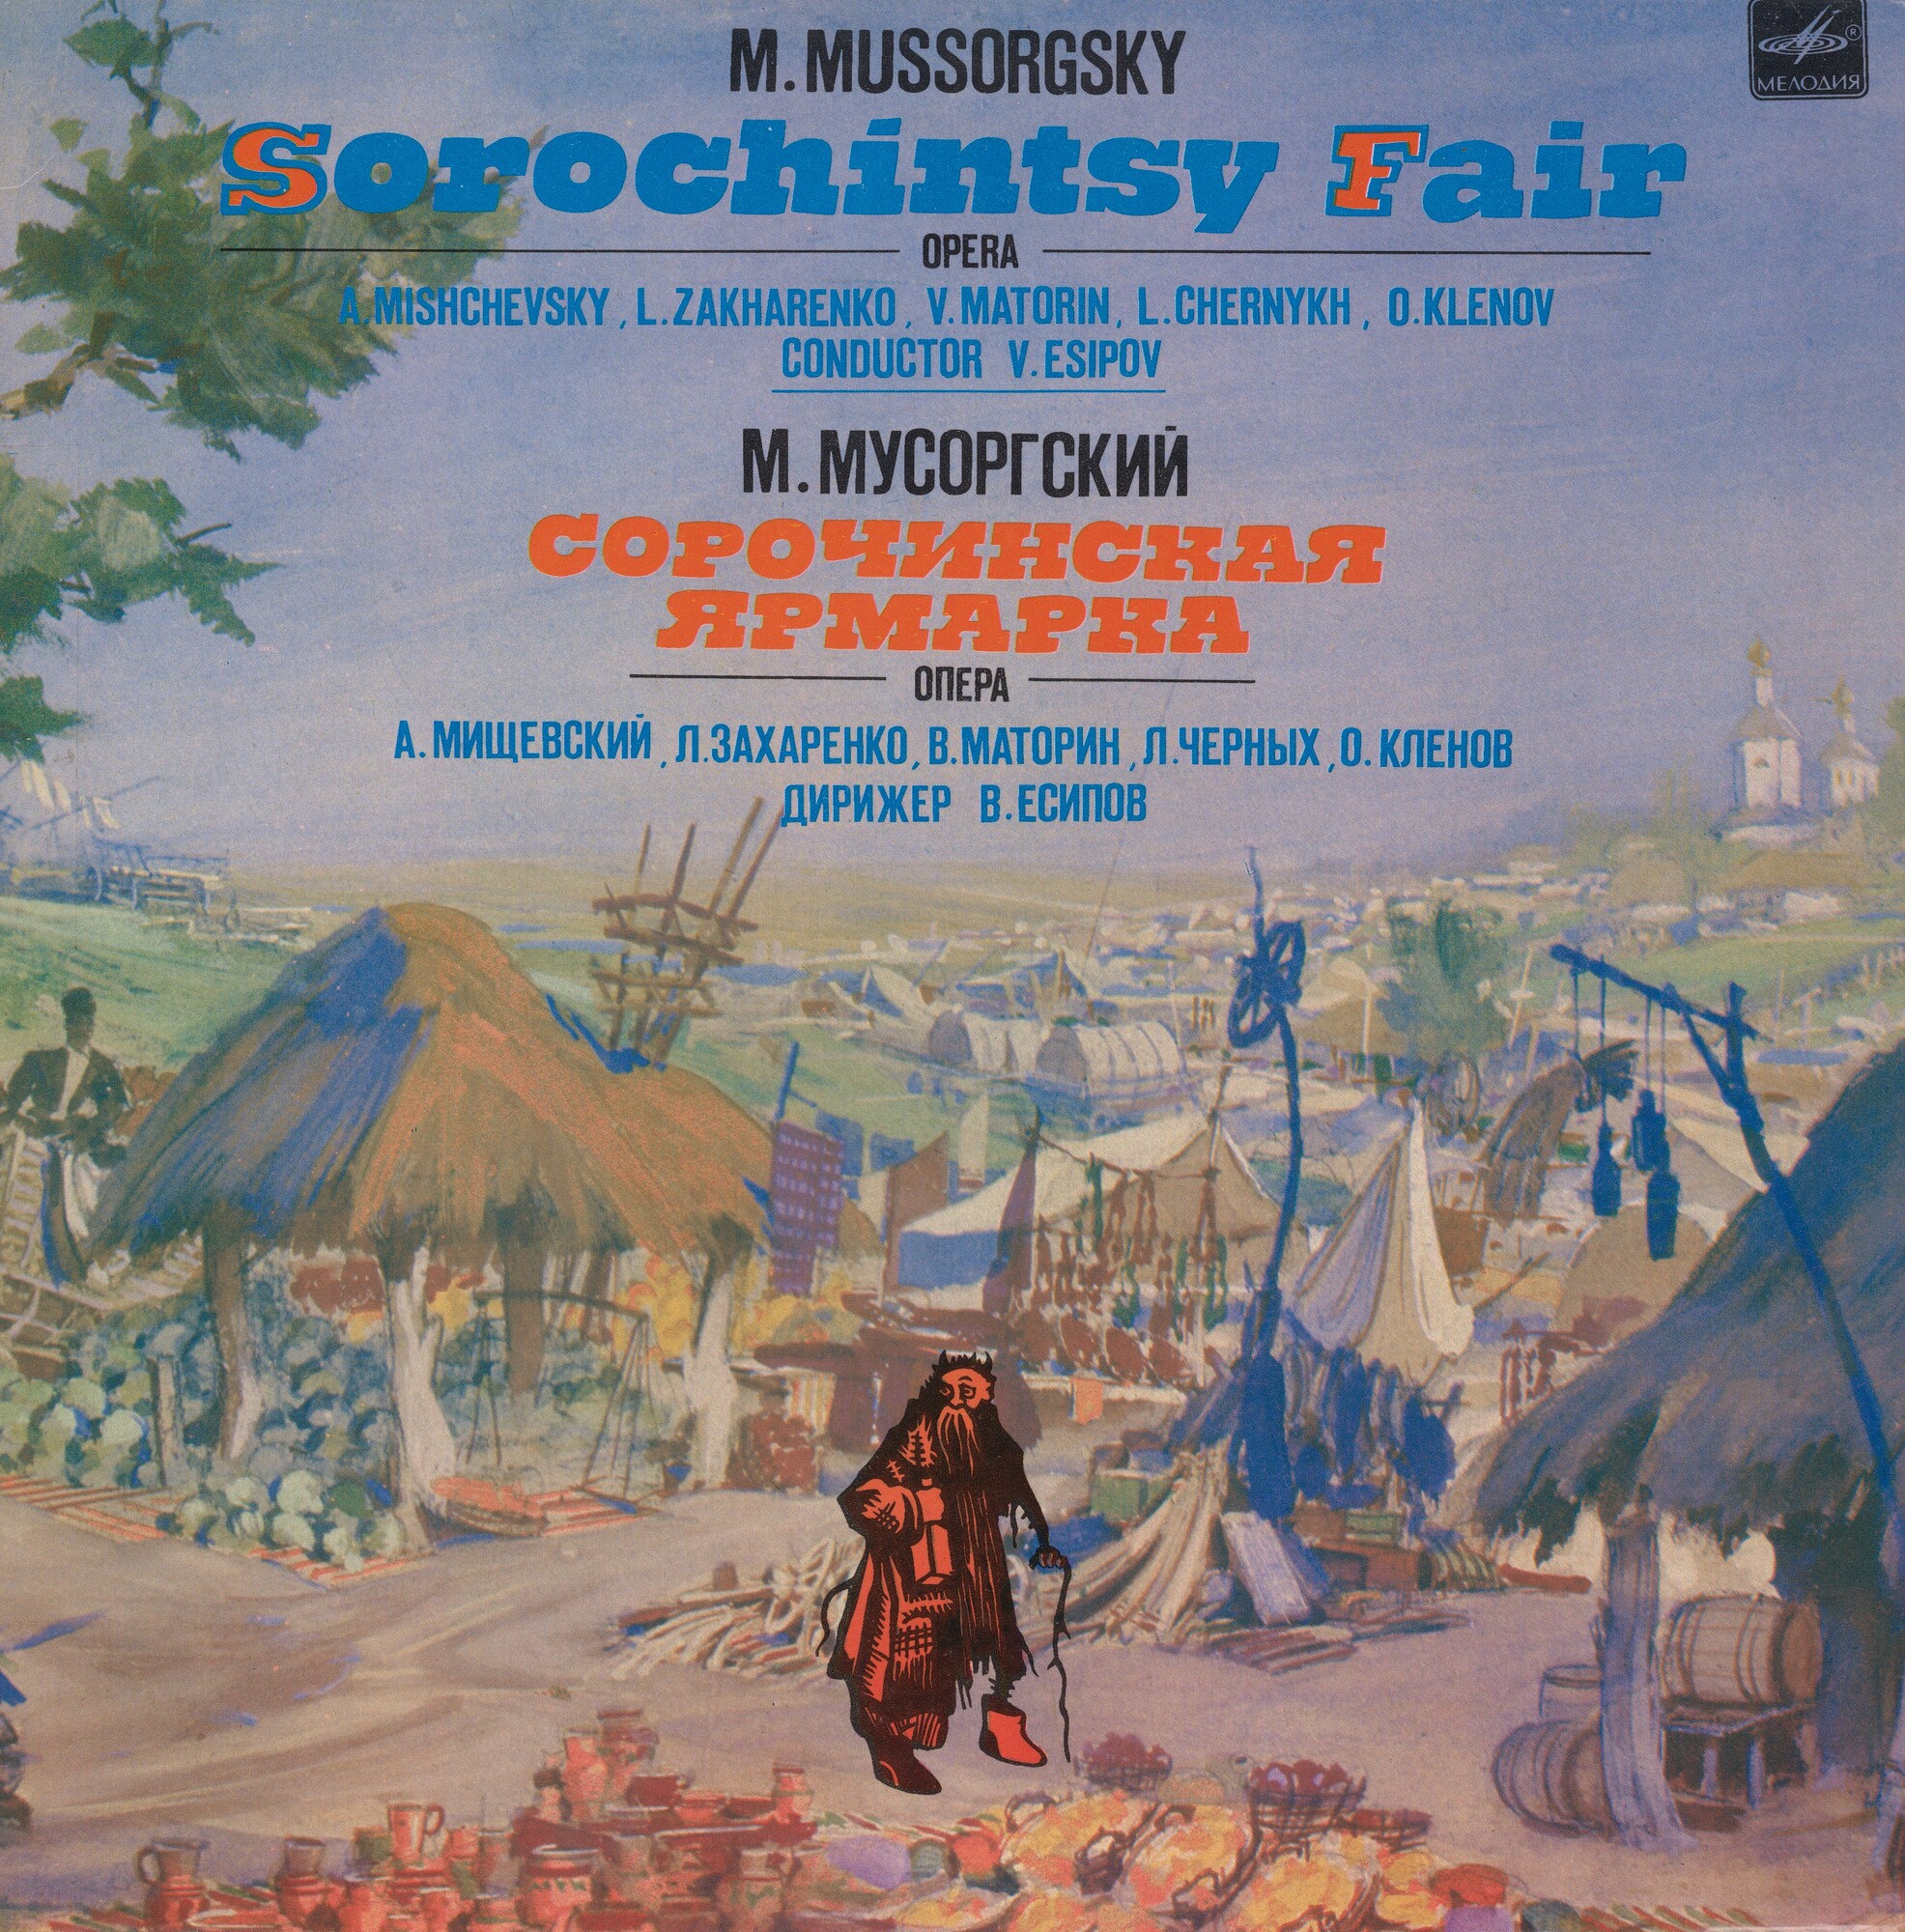 М. МУСОРГСКИЙ (1839-1881): «Сорочинская ярмарка», опера в трех действиях